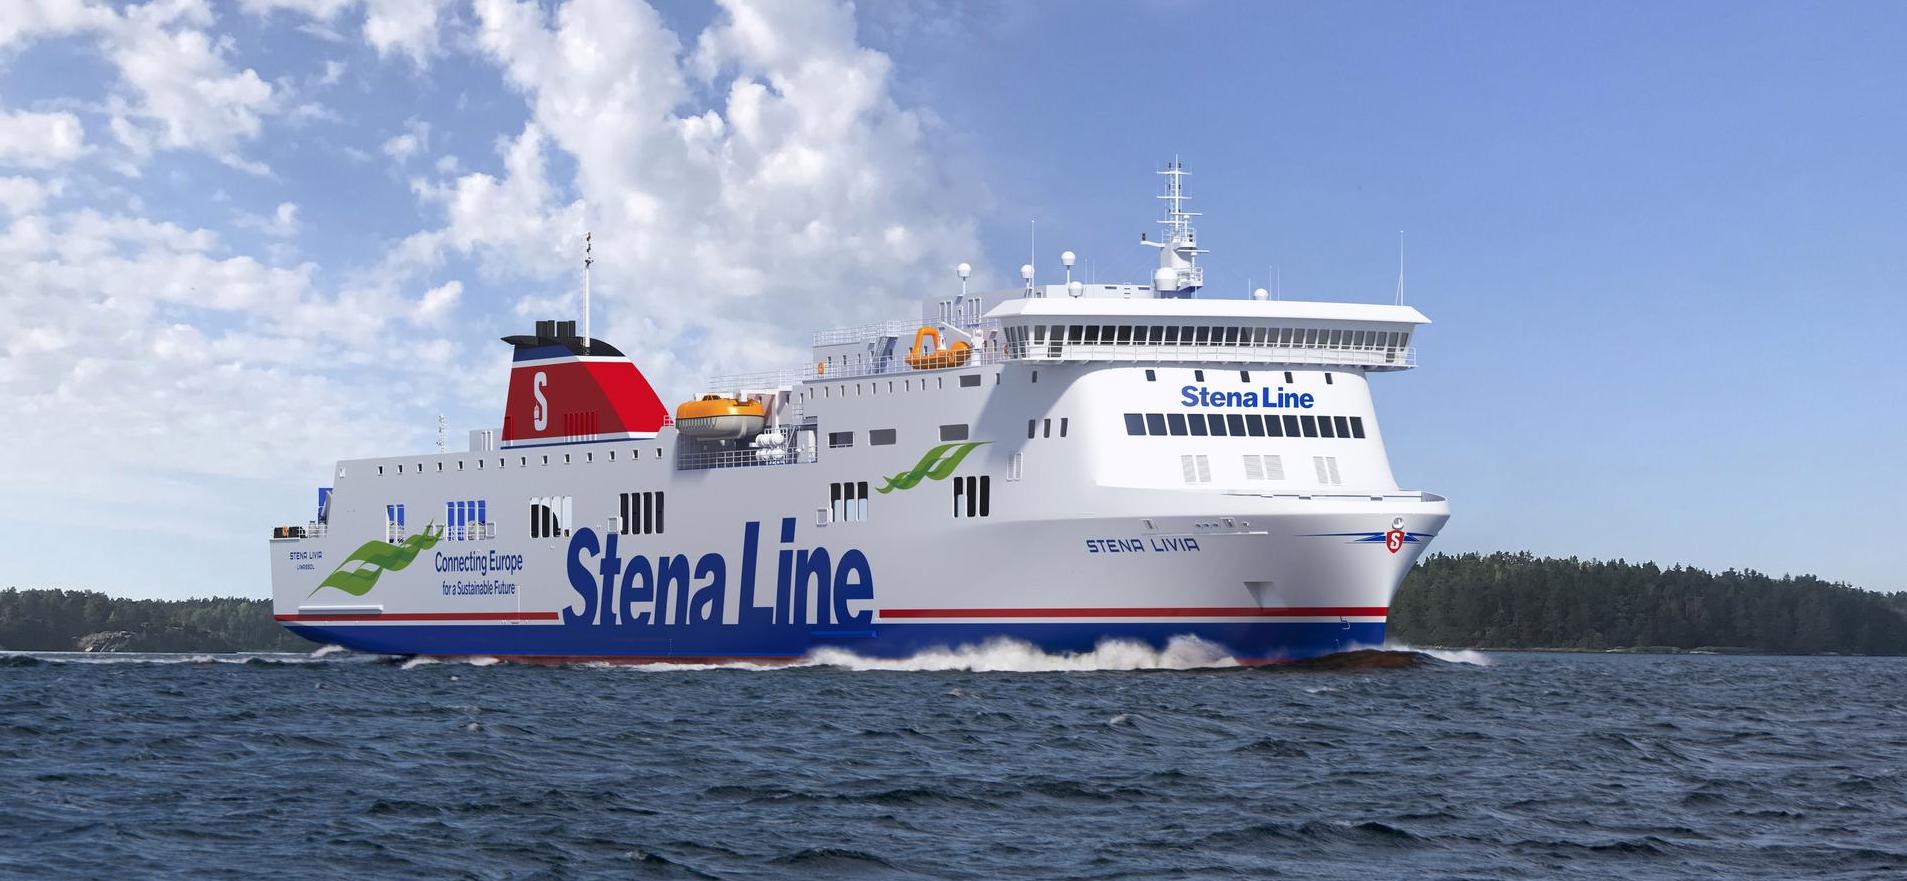 Stena Line - Stena Livia 船の写真